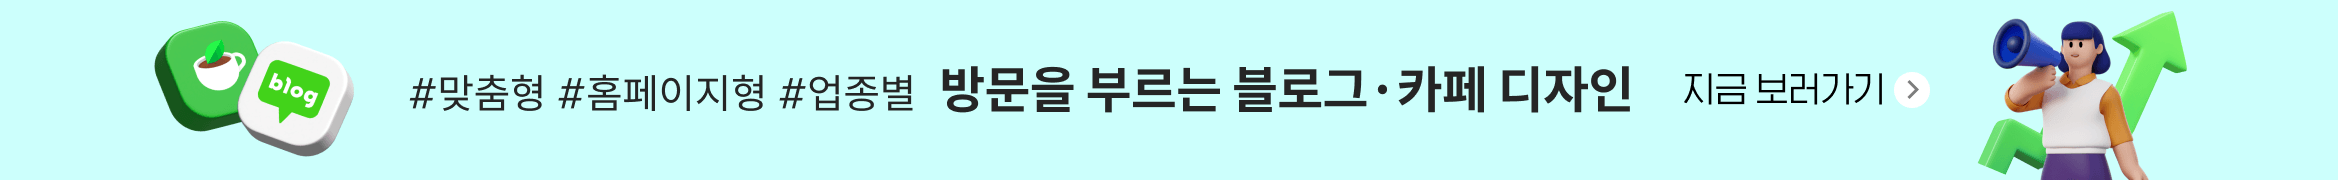 포항건마🎿 ≪OPDAL040.COM≫오피달리기 🏃포항풀싸롱🎉포항OP🎂포항스파🚜포항립카페🎺포항대딸방✌️포항출장안마🦃 배너